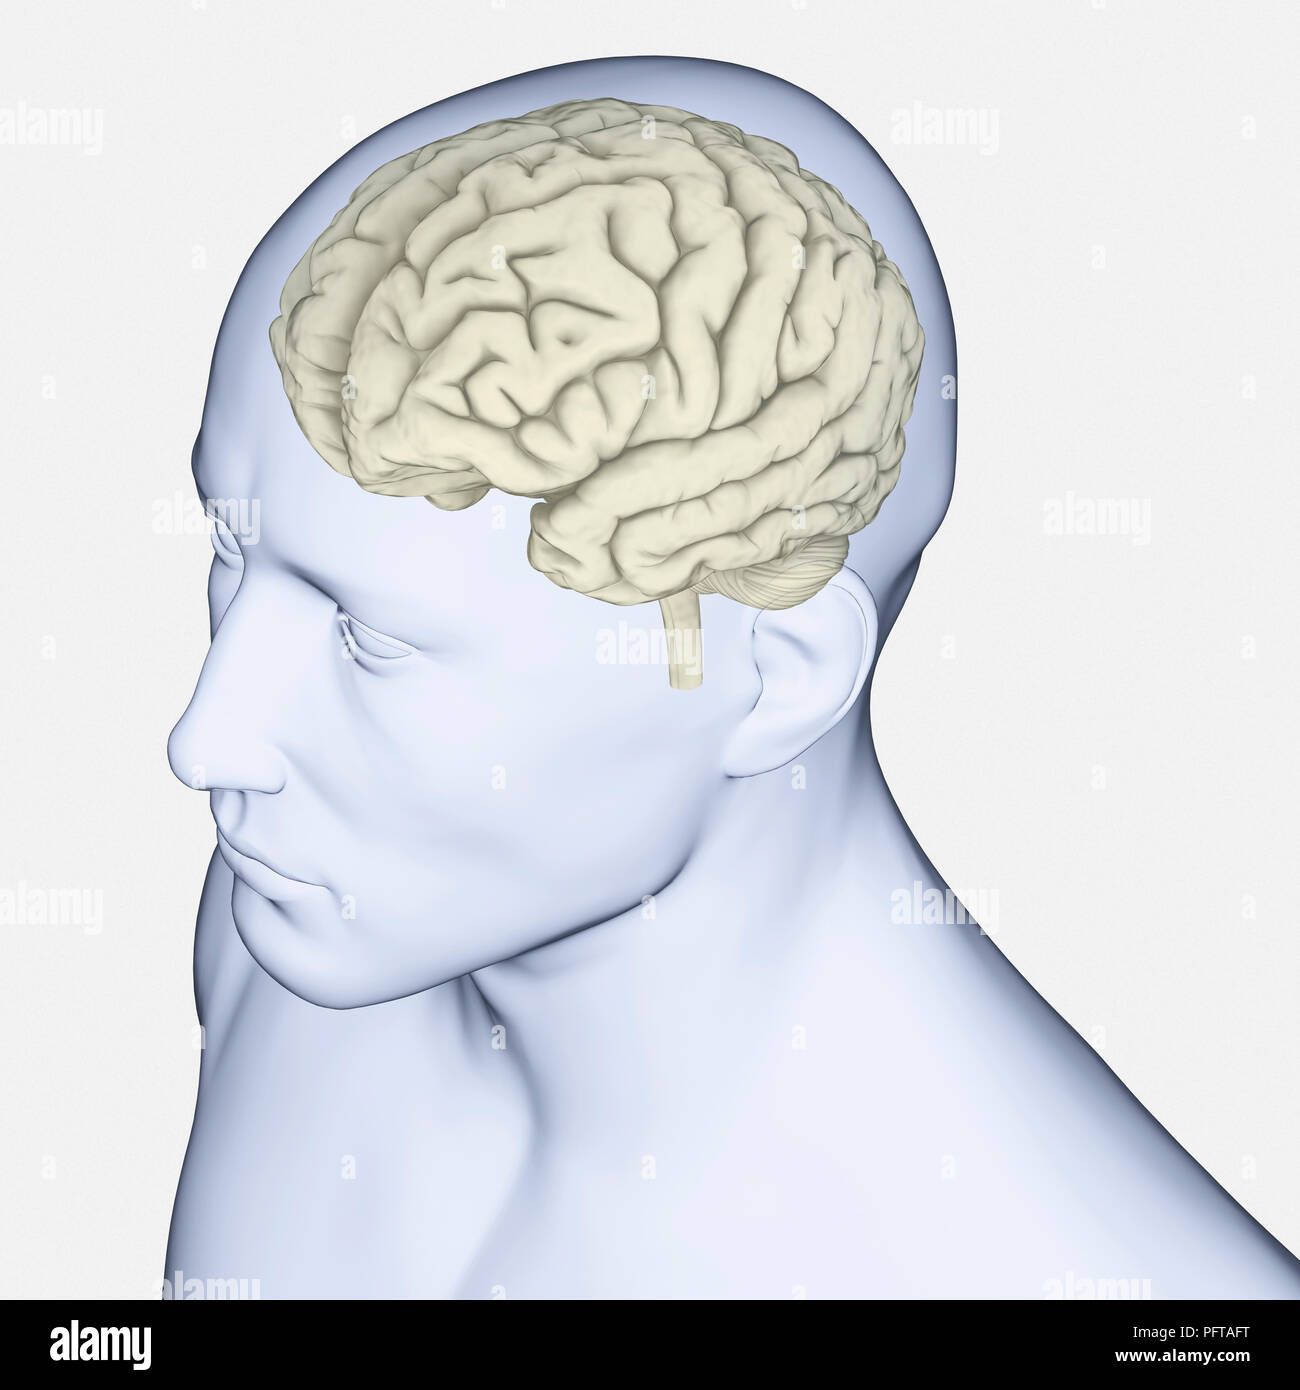 Ilustración digital del cerebro humano Foto de stock